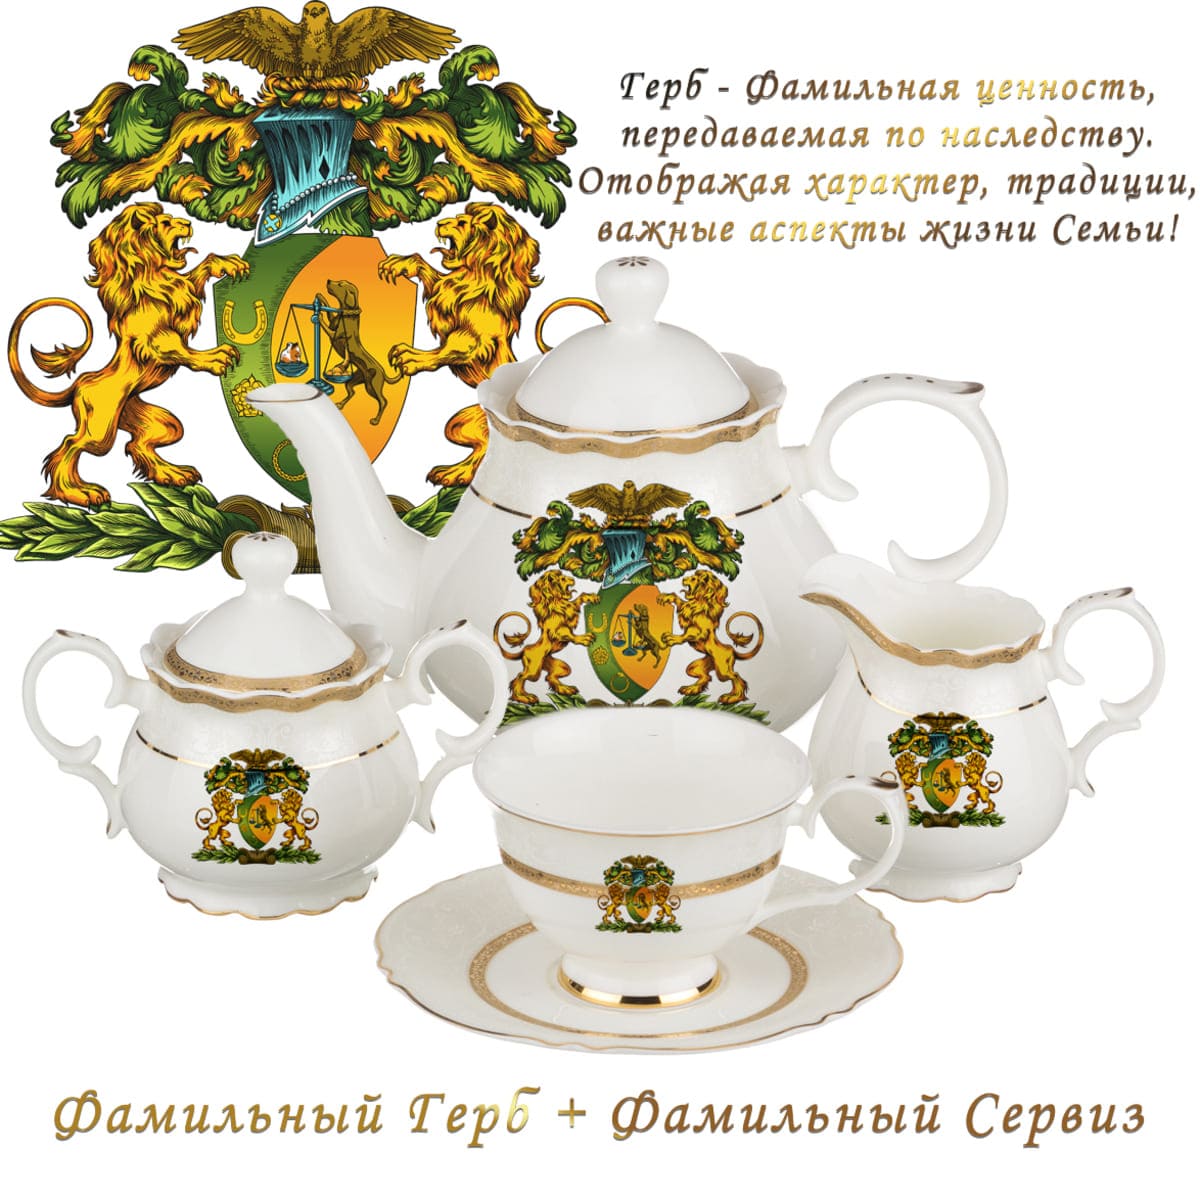 Родовой герб на сервизе, фамильная ценность, заказать родовой герб, чашка  с гербом, посуда с гербом